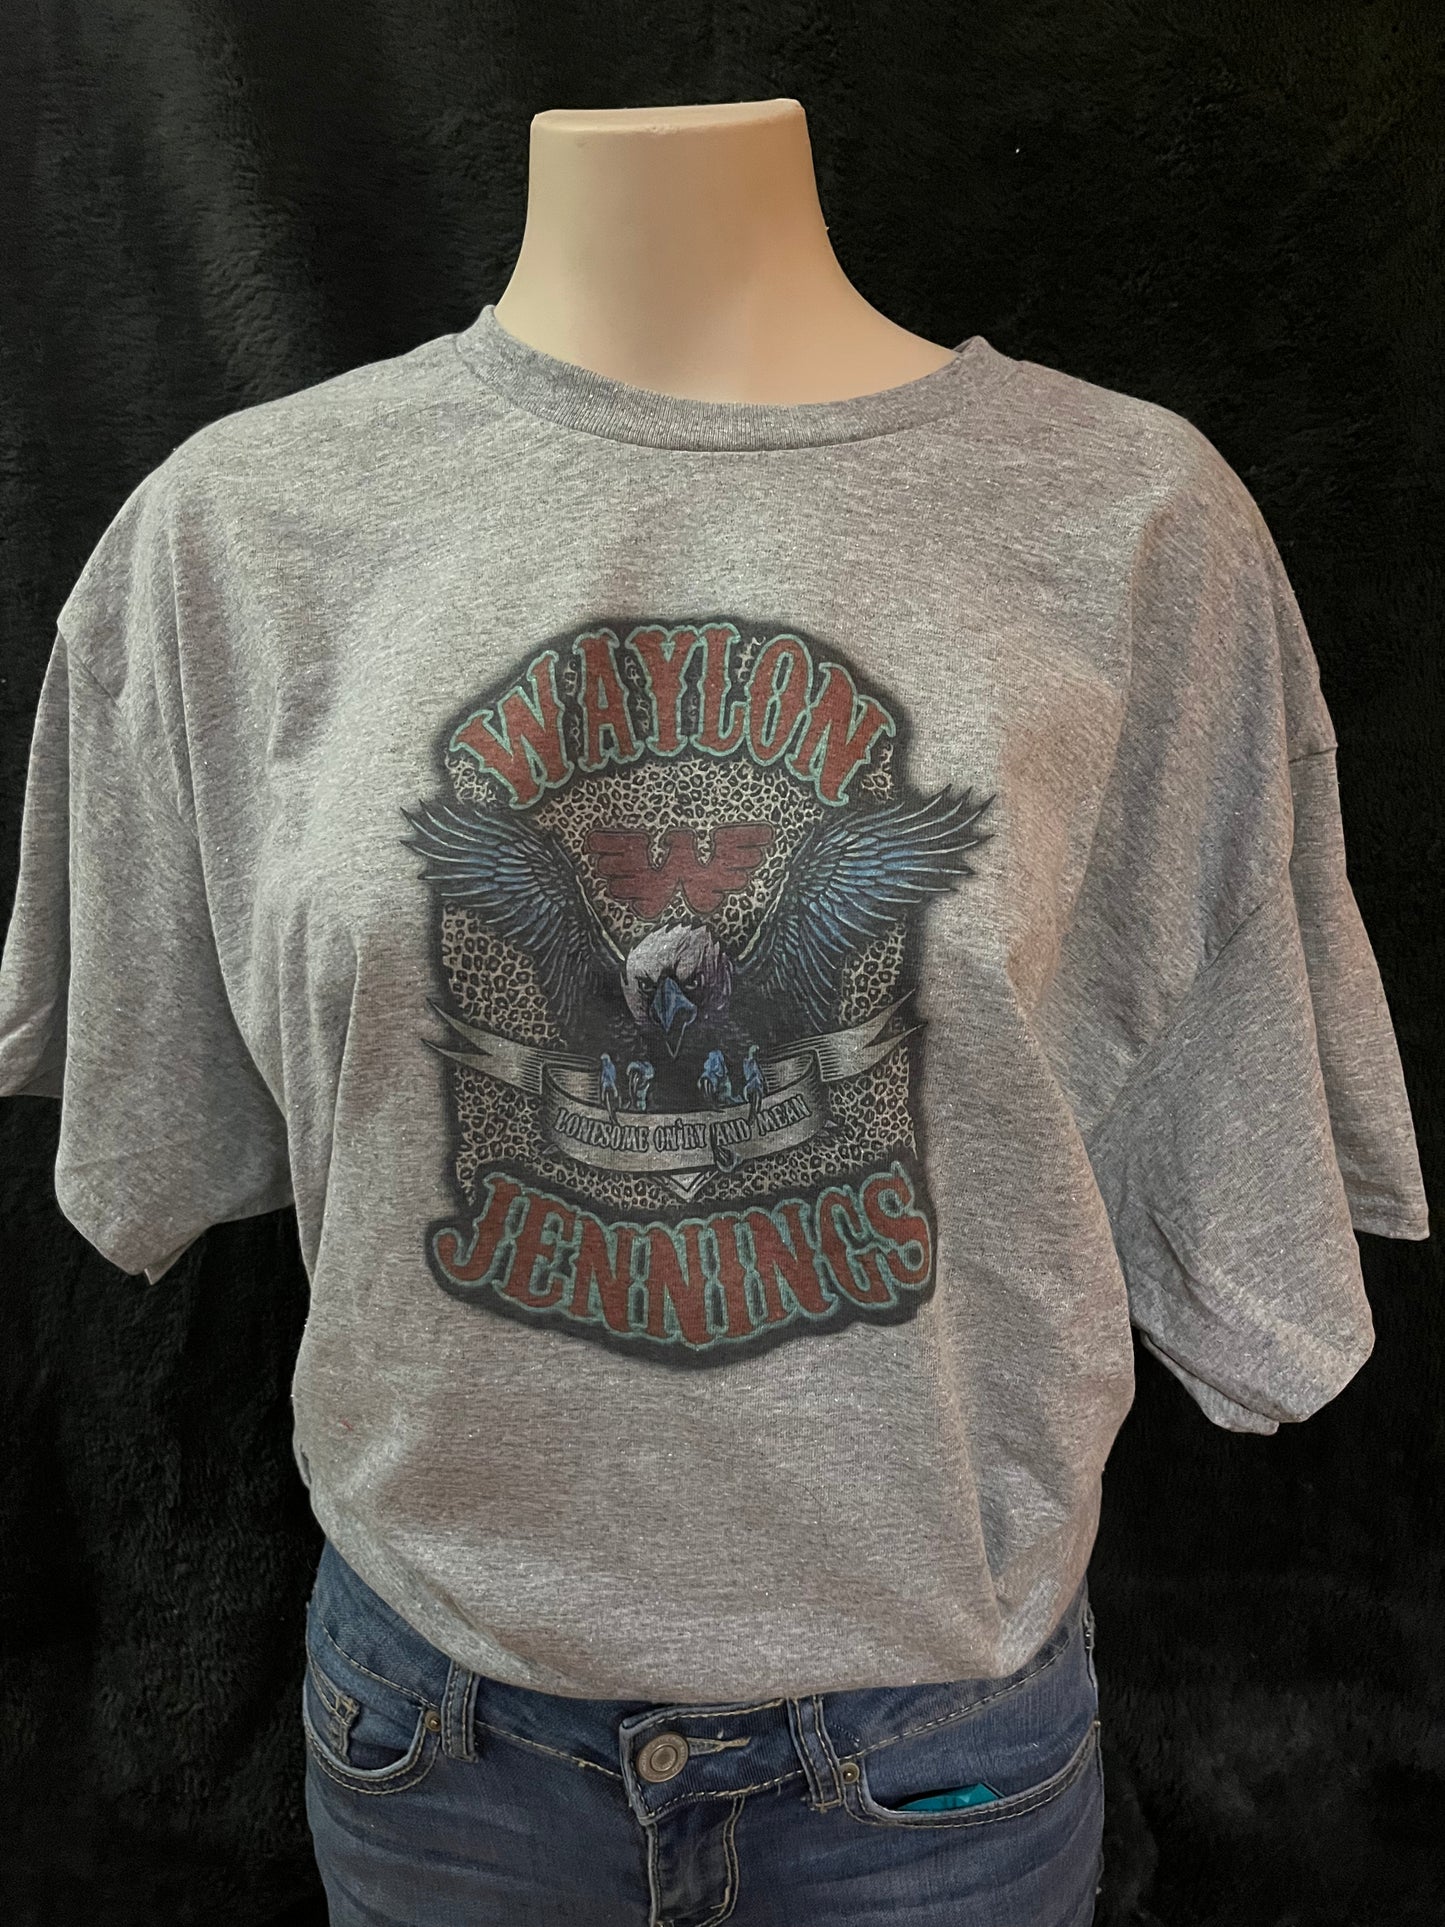 Waylon Jennings Graphic T-shirt